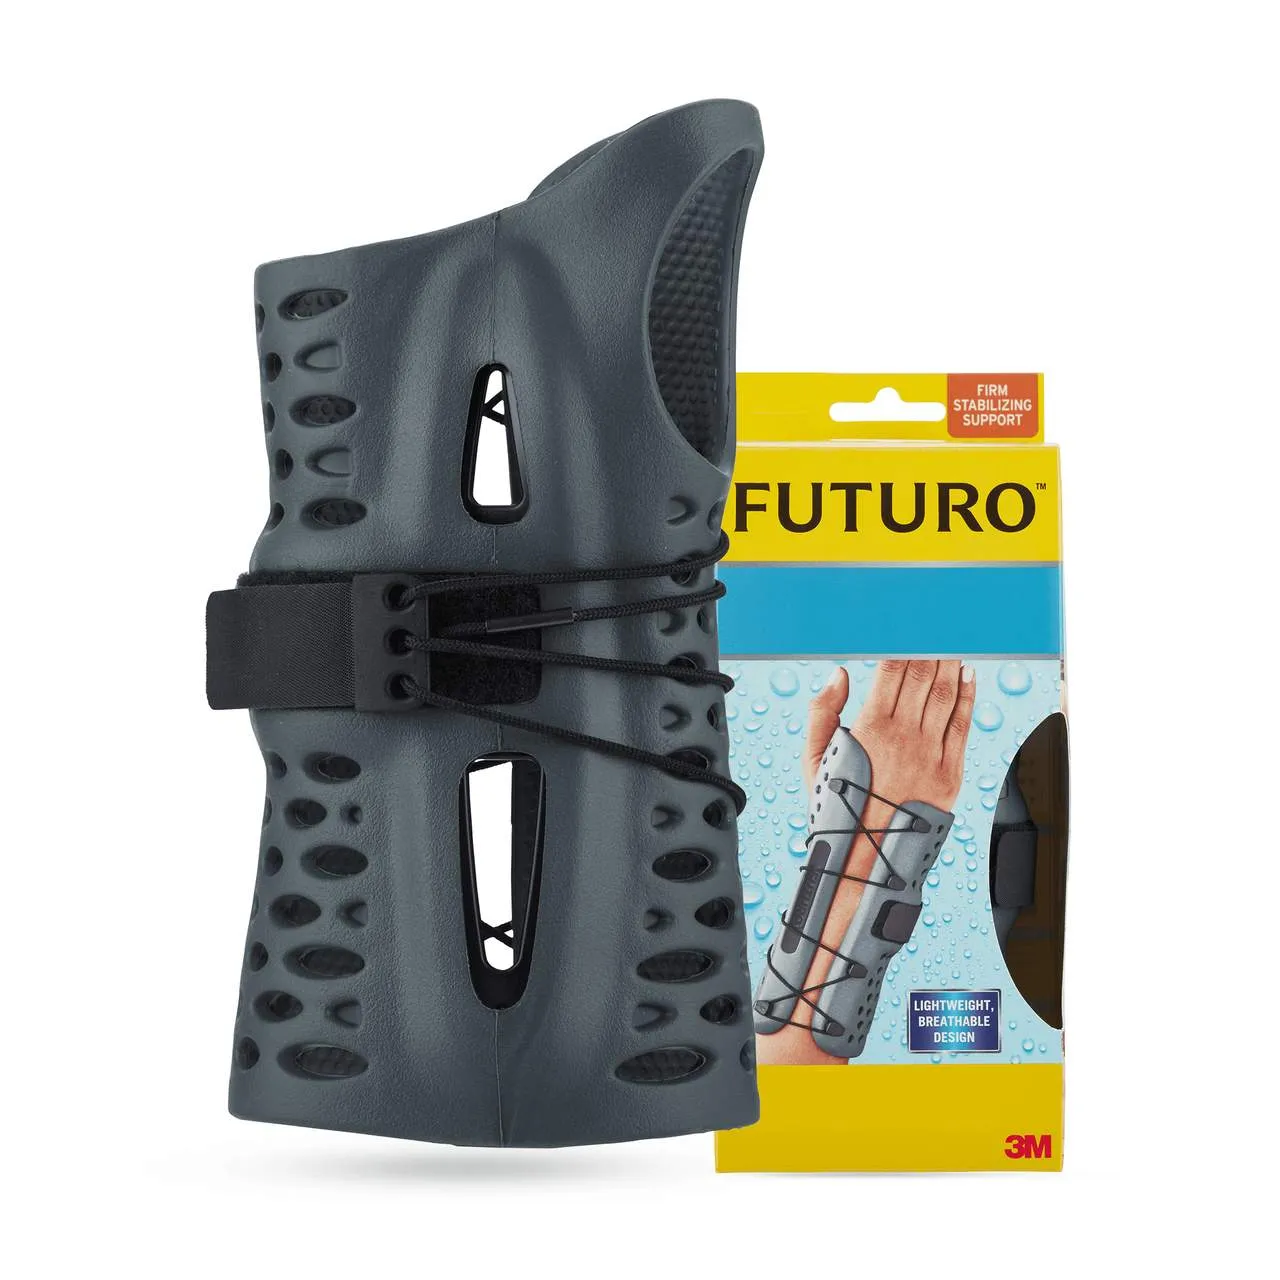 Futuro, wodoodporny stabilizator nadgarstka, lewa ręka, rozmiar S/M, szary, 1 sztuka